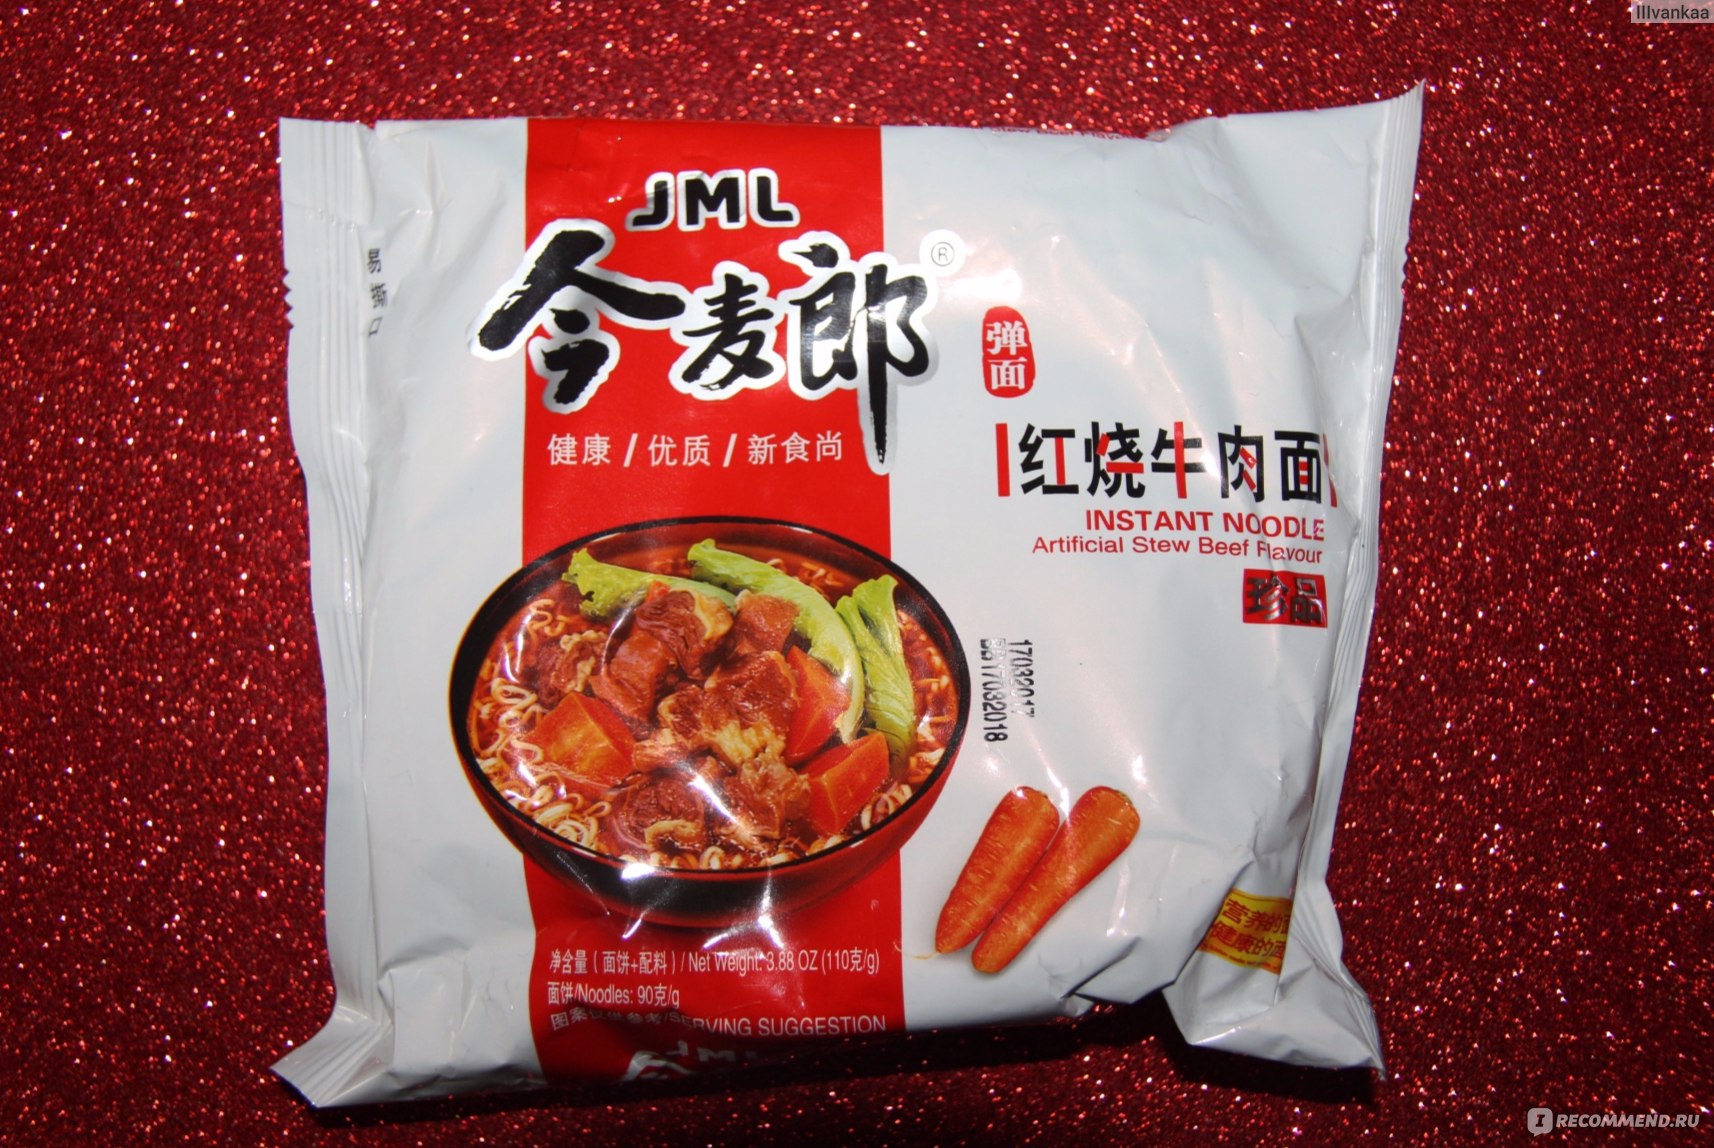 JML instant Noodle stewed Beef flavor